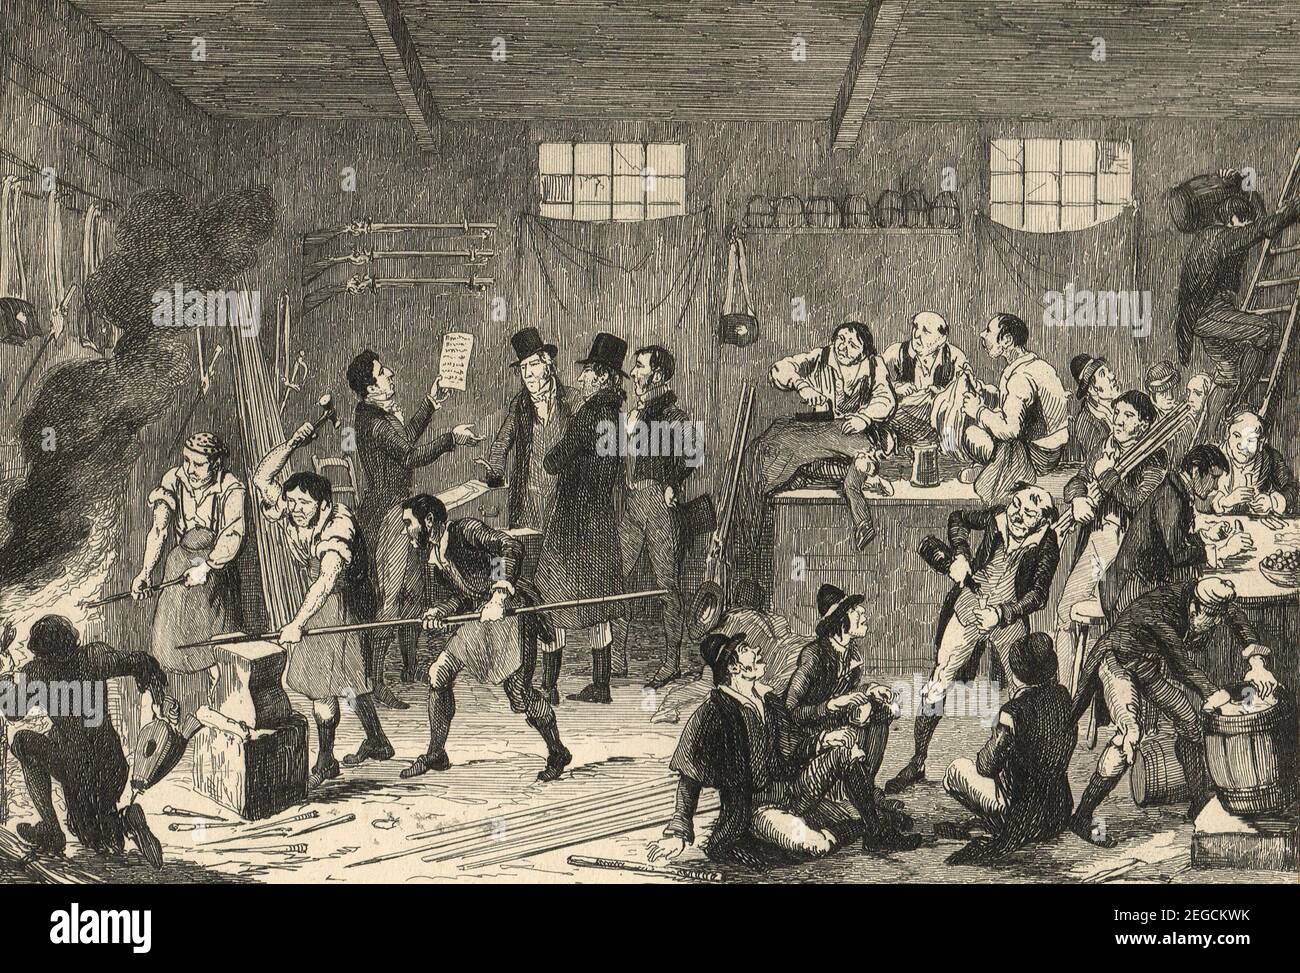 Robert Emmet, republicano irlandés, patriota nacionalista irlandés, orador y líder rebelde, Haciendo preparativos para su abortiva rebelión contra el gobierno británico en 1803 Foto de stock